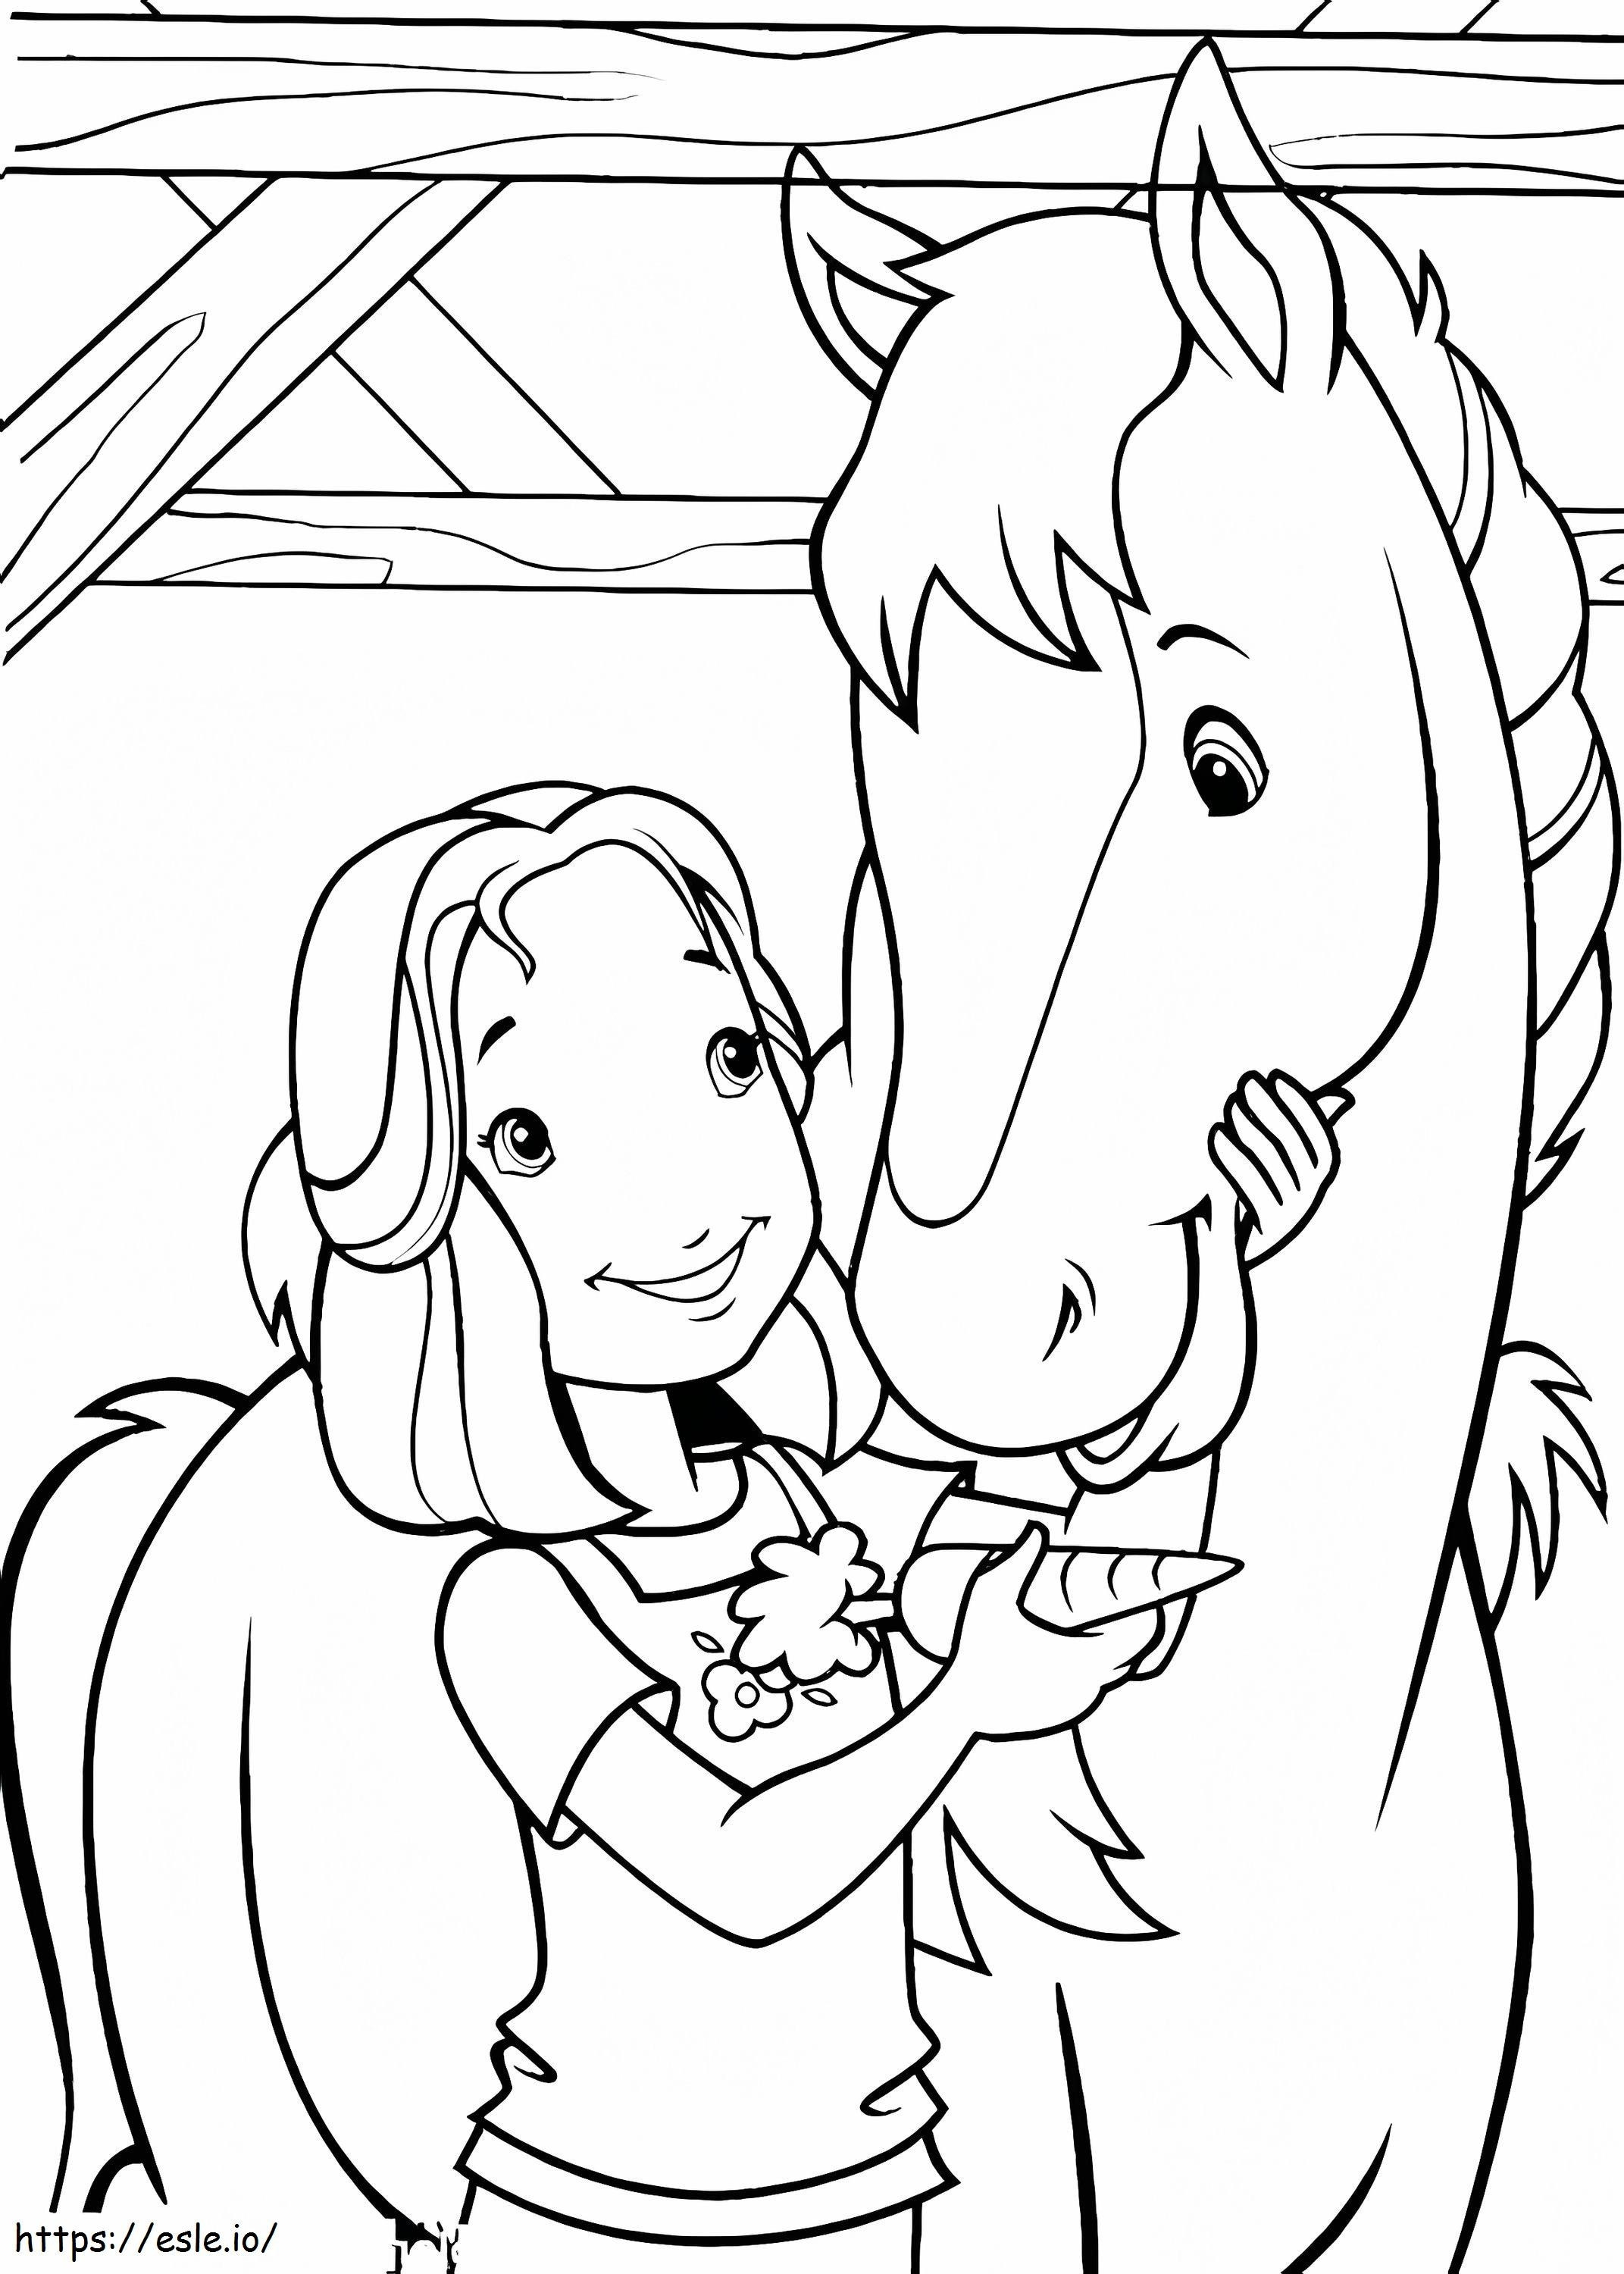 1541811688 Cavalos Livres Cavalo Holly Amigo Alimentando Sua Cidra Com Folha De Cenoura para colorir